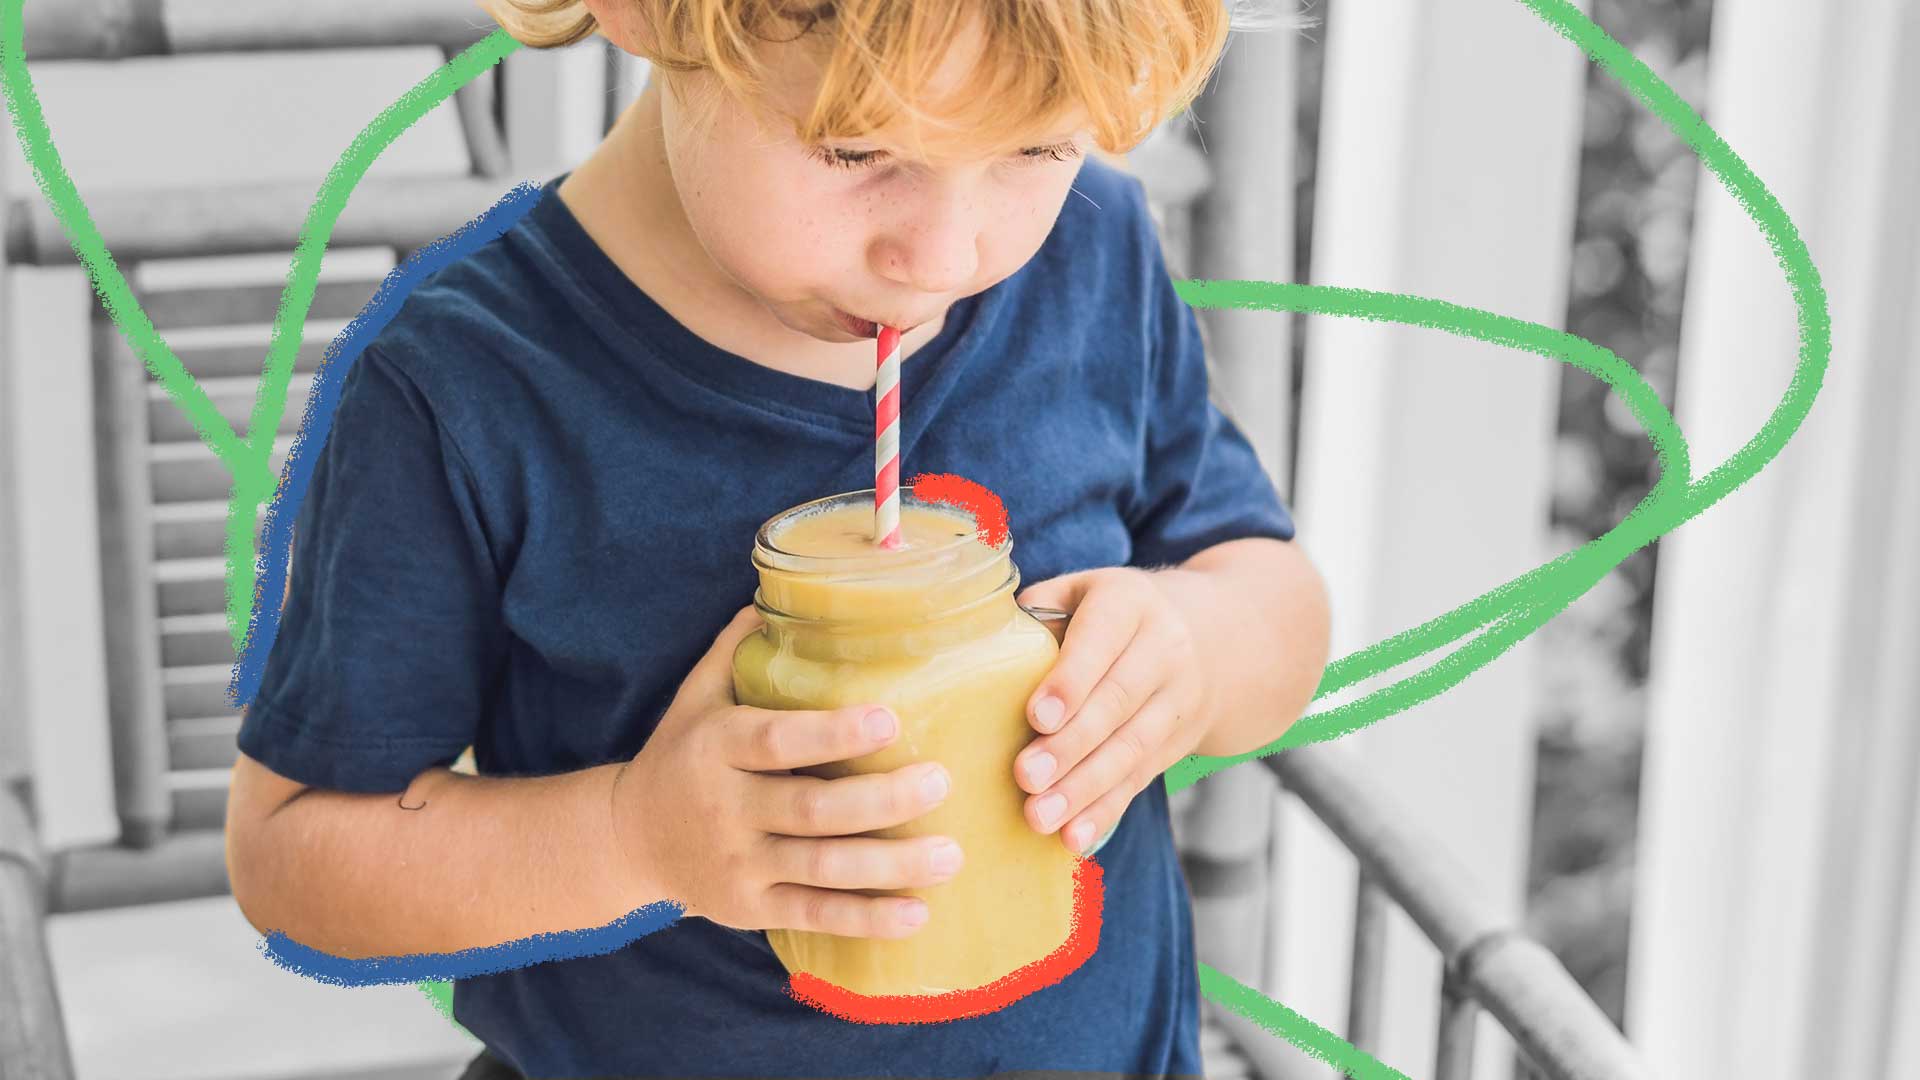 Um menino de camiseta azul segura um pote com um suco amarelo, enquanto bebe por um canudo